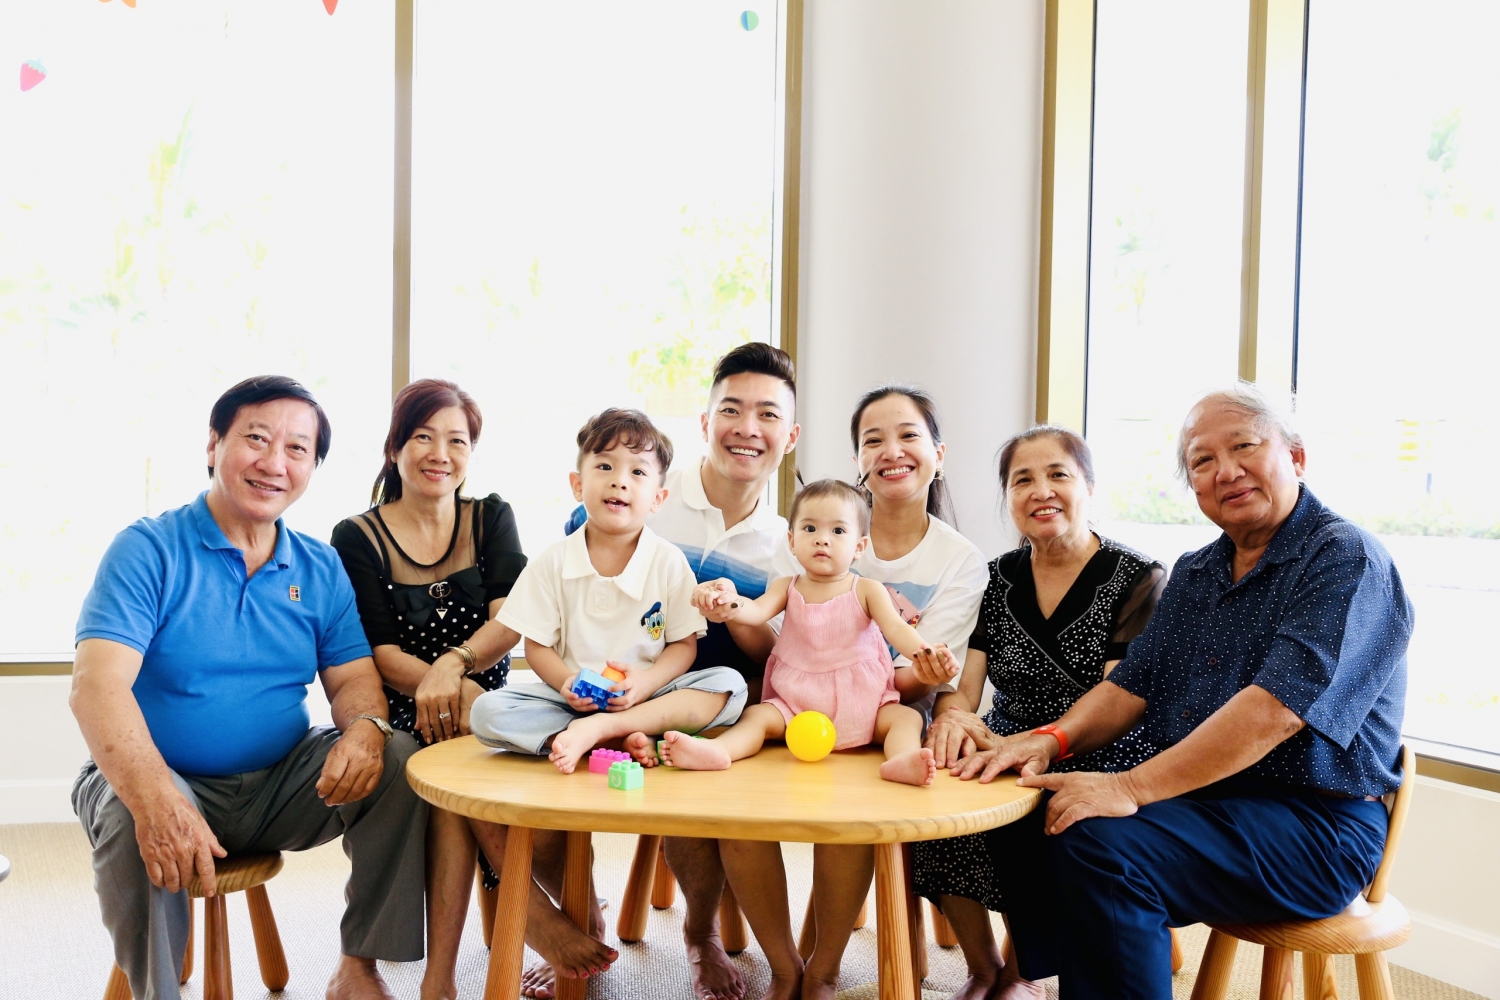 Quốc Cơ mong muốn được ở gần ba mẹ để tiện chăm sóc và gia đình được vui vầy bên nhau mỗi ngày